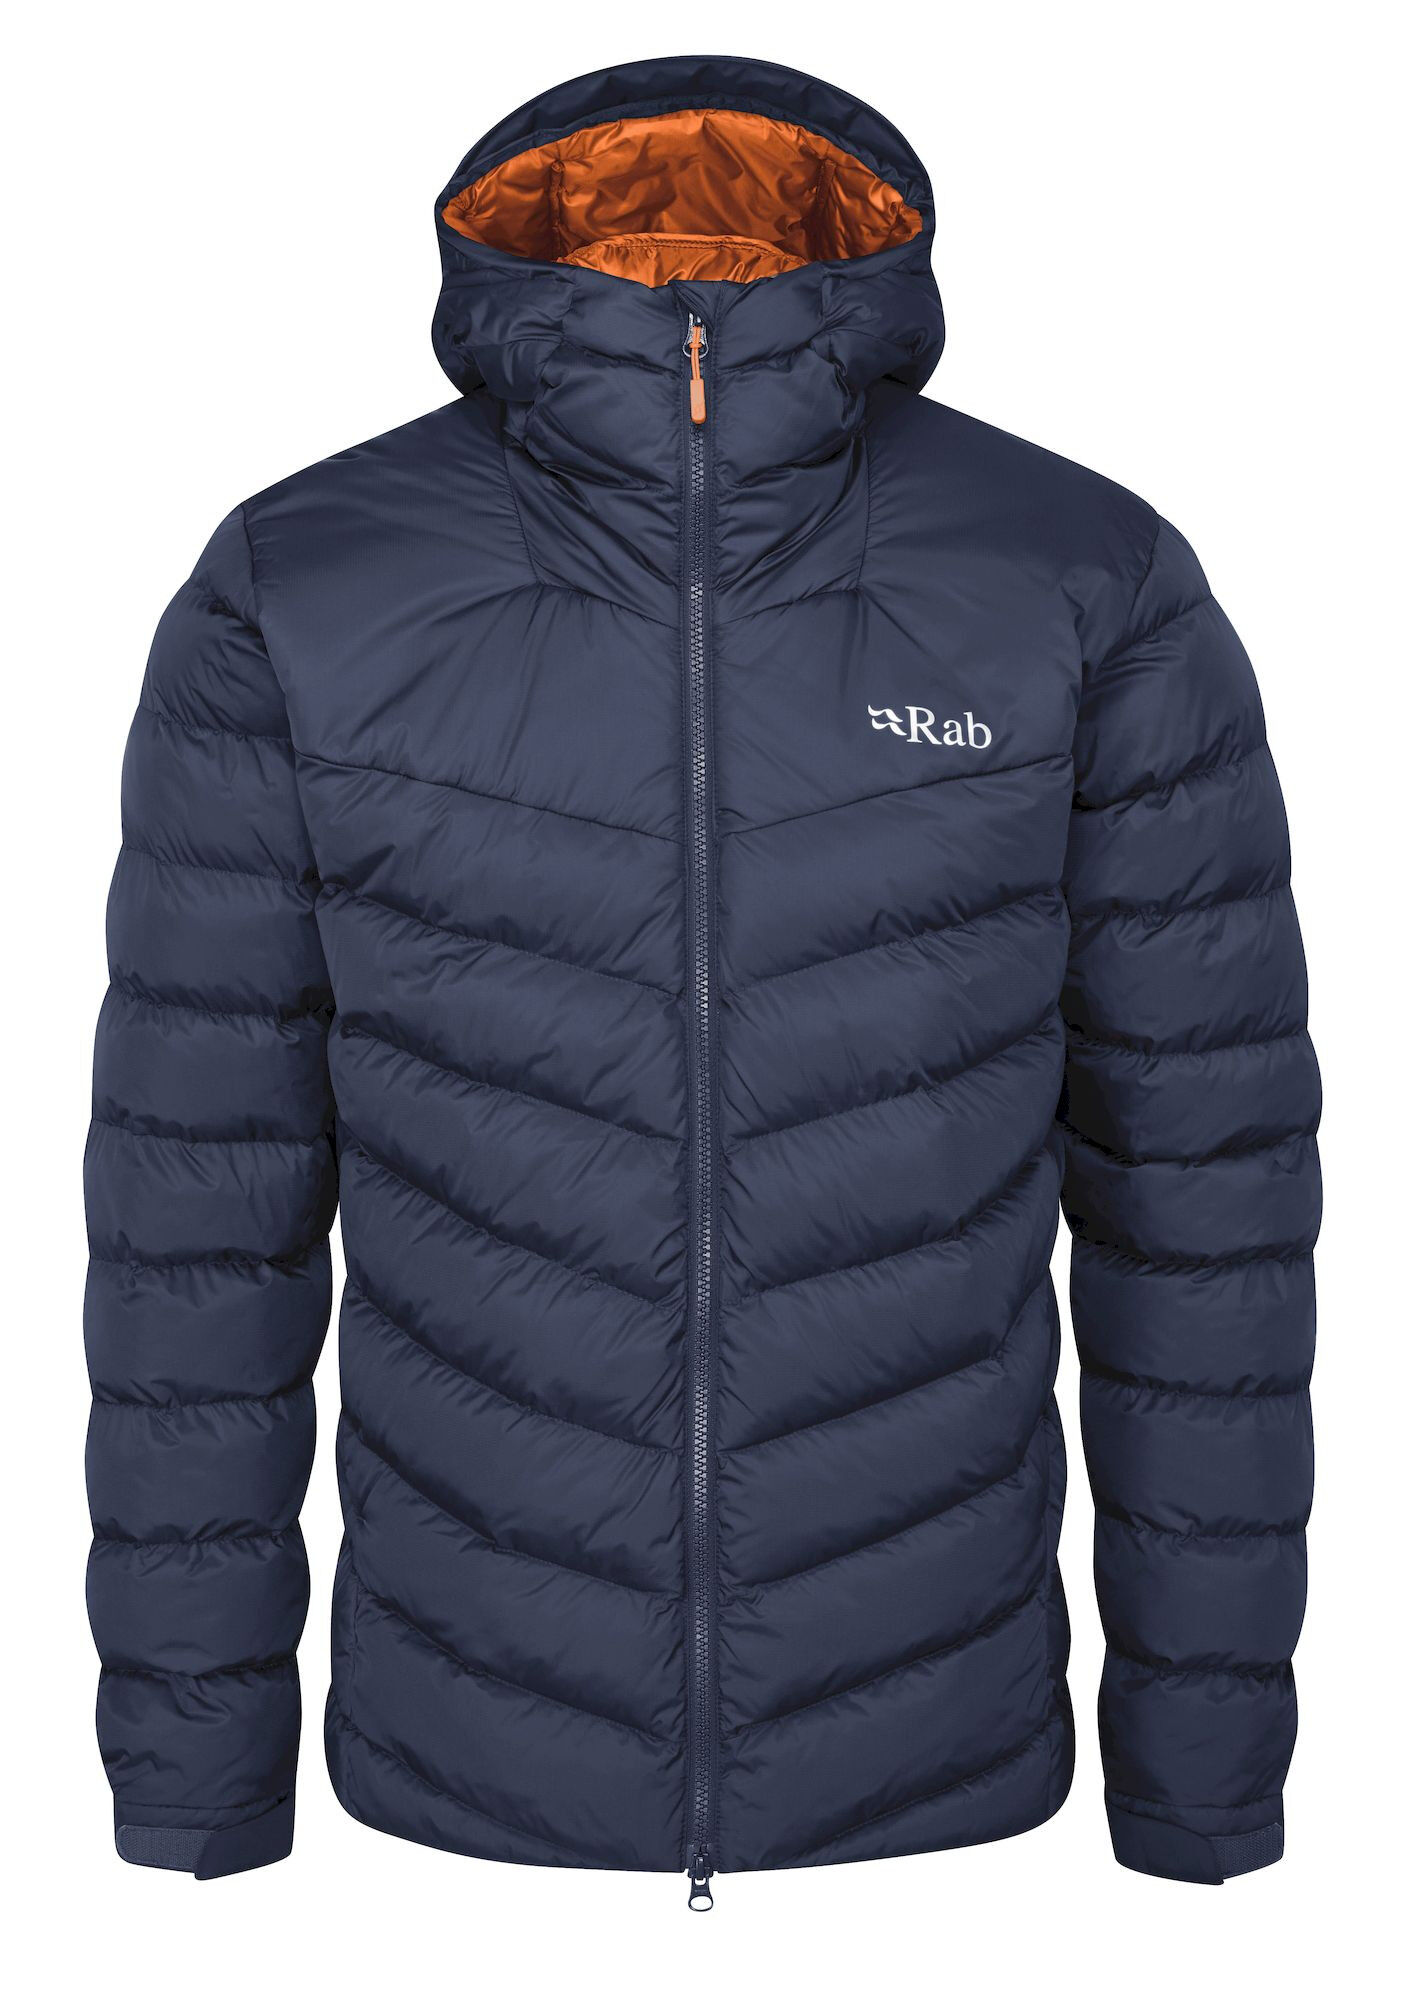 Rab Nebula Pro Jacket - Synthetic jacket - Men's